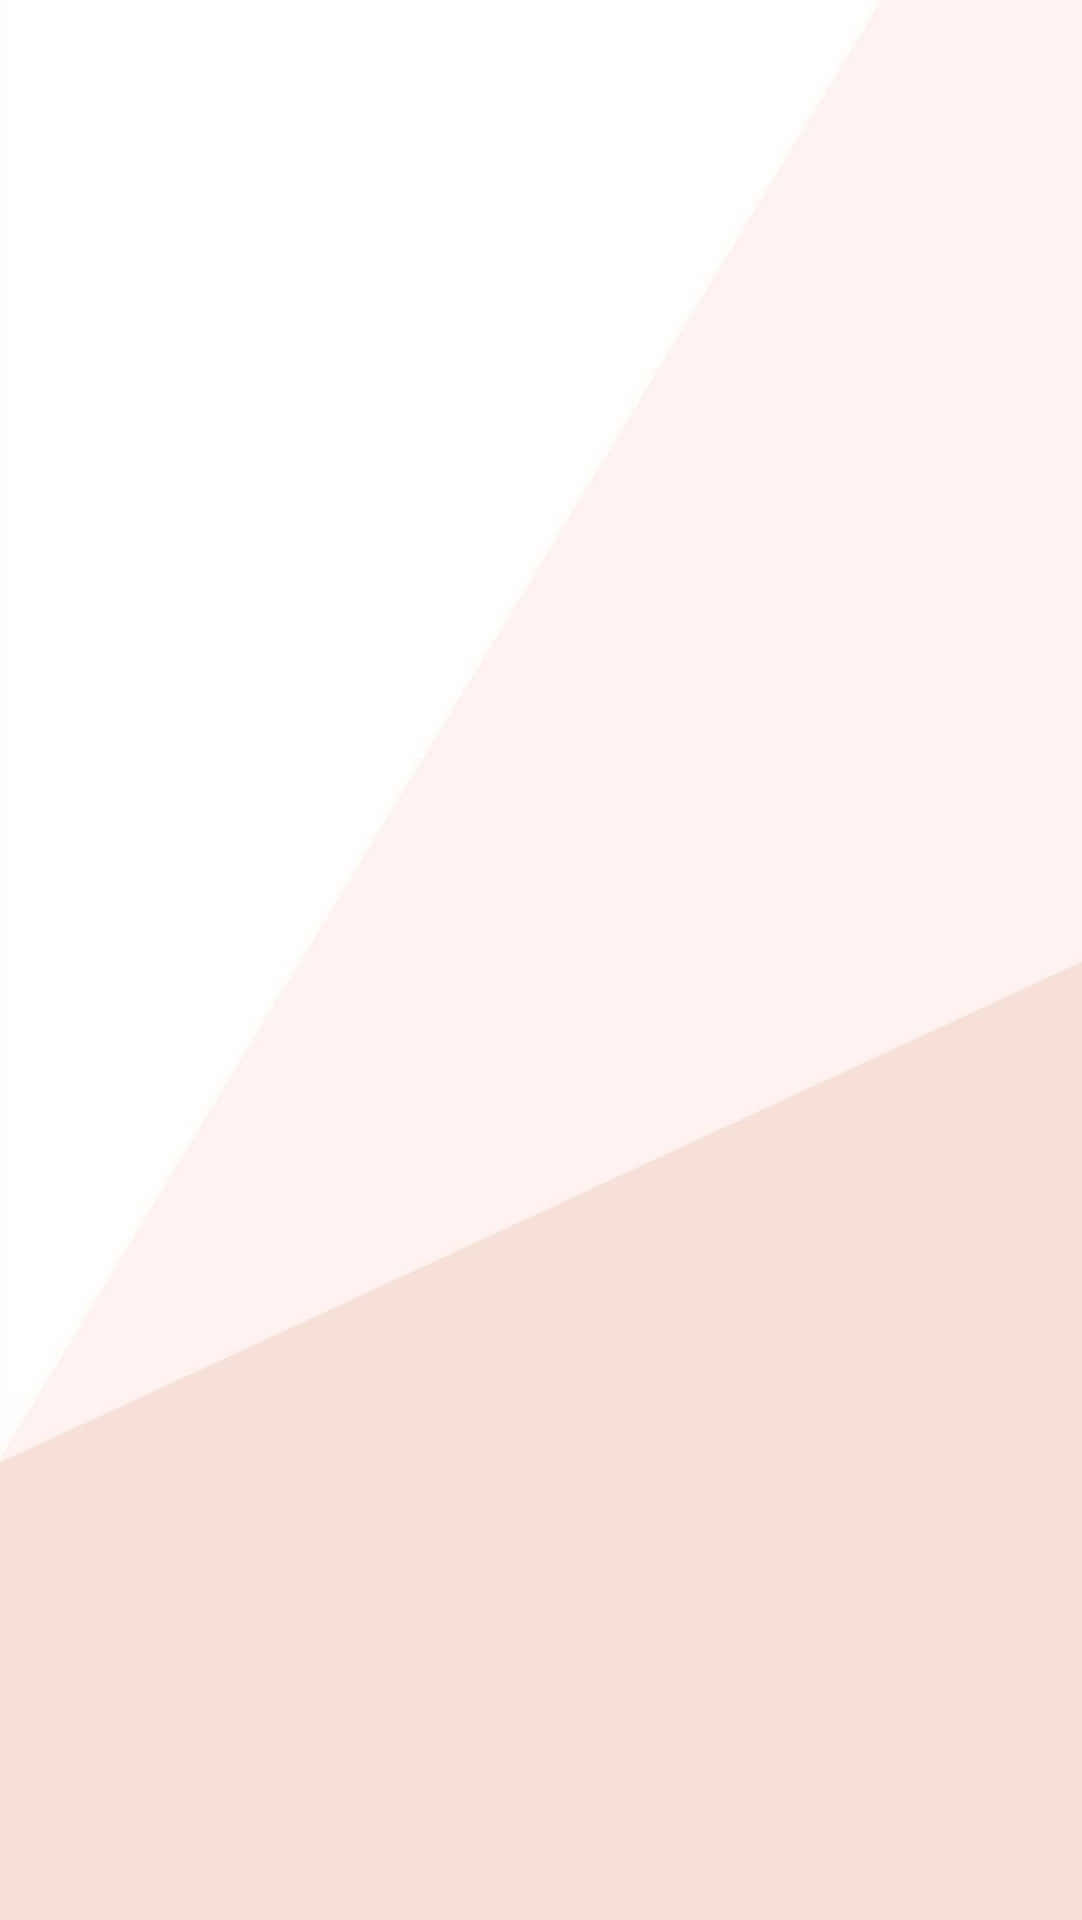 Unfondo Rosa Y Blanco Con Un Triángulo Fondo de pantalla